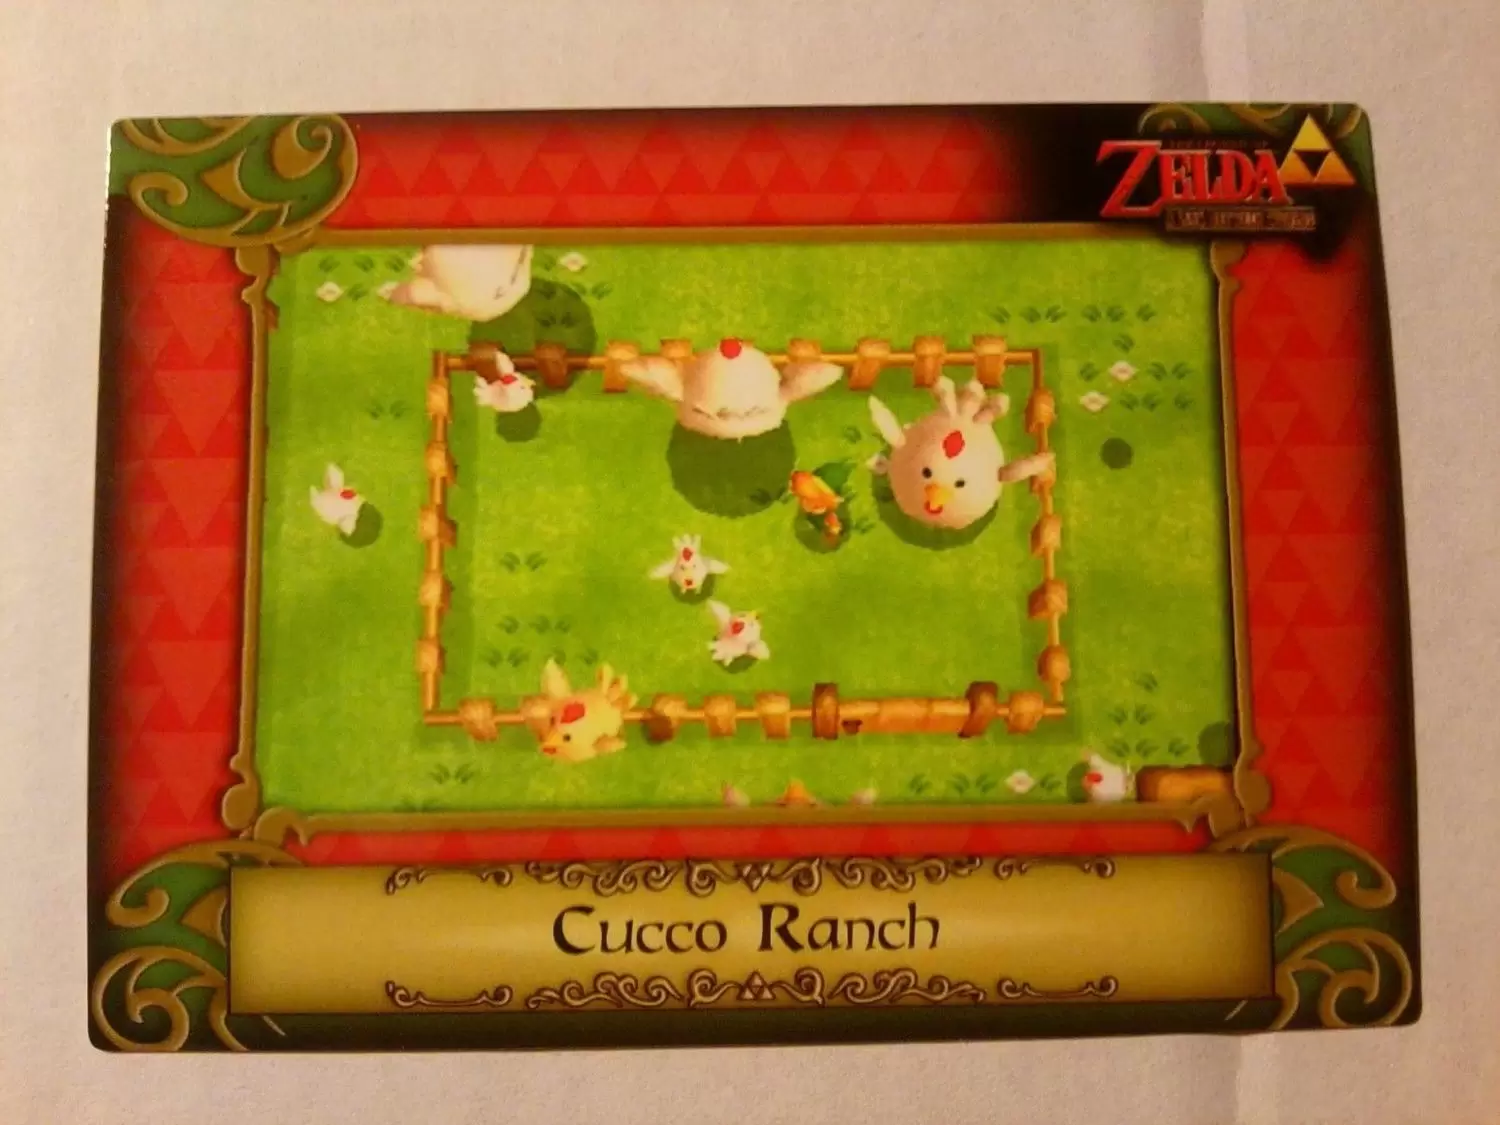 The Legend of Zelda - Cucco Ranch